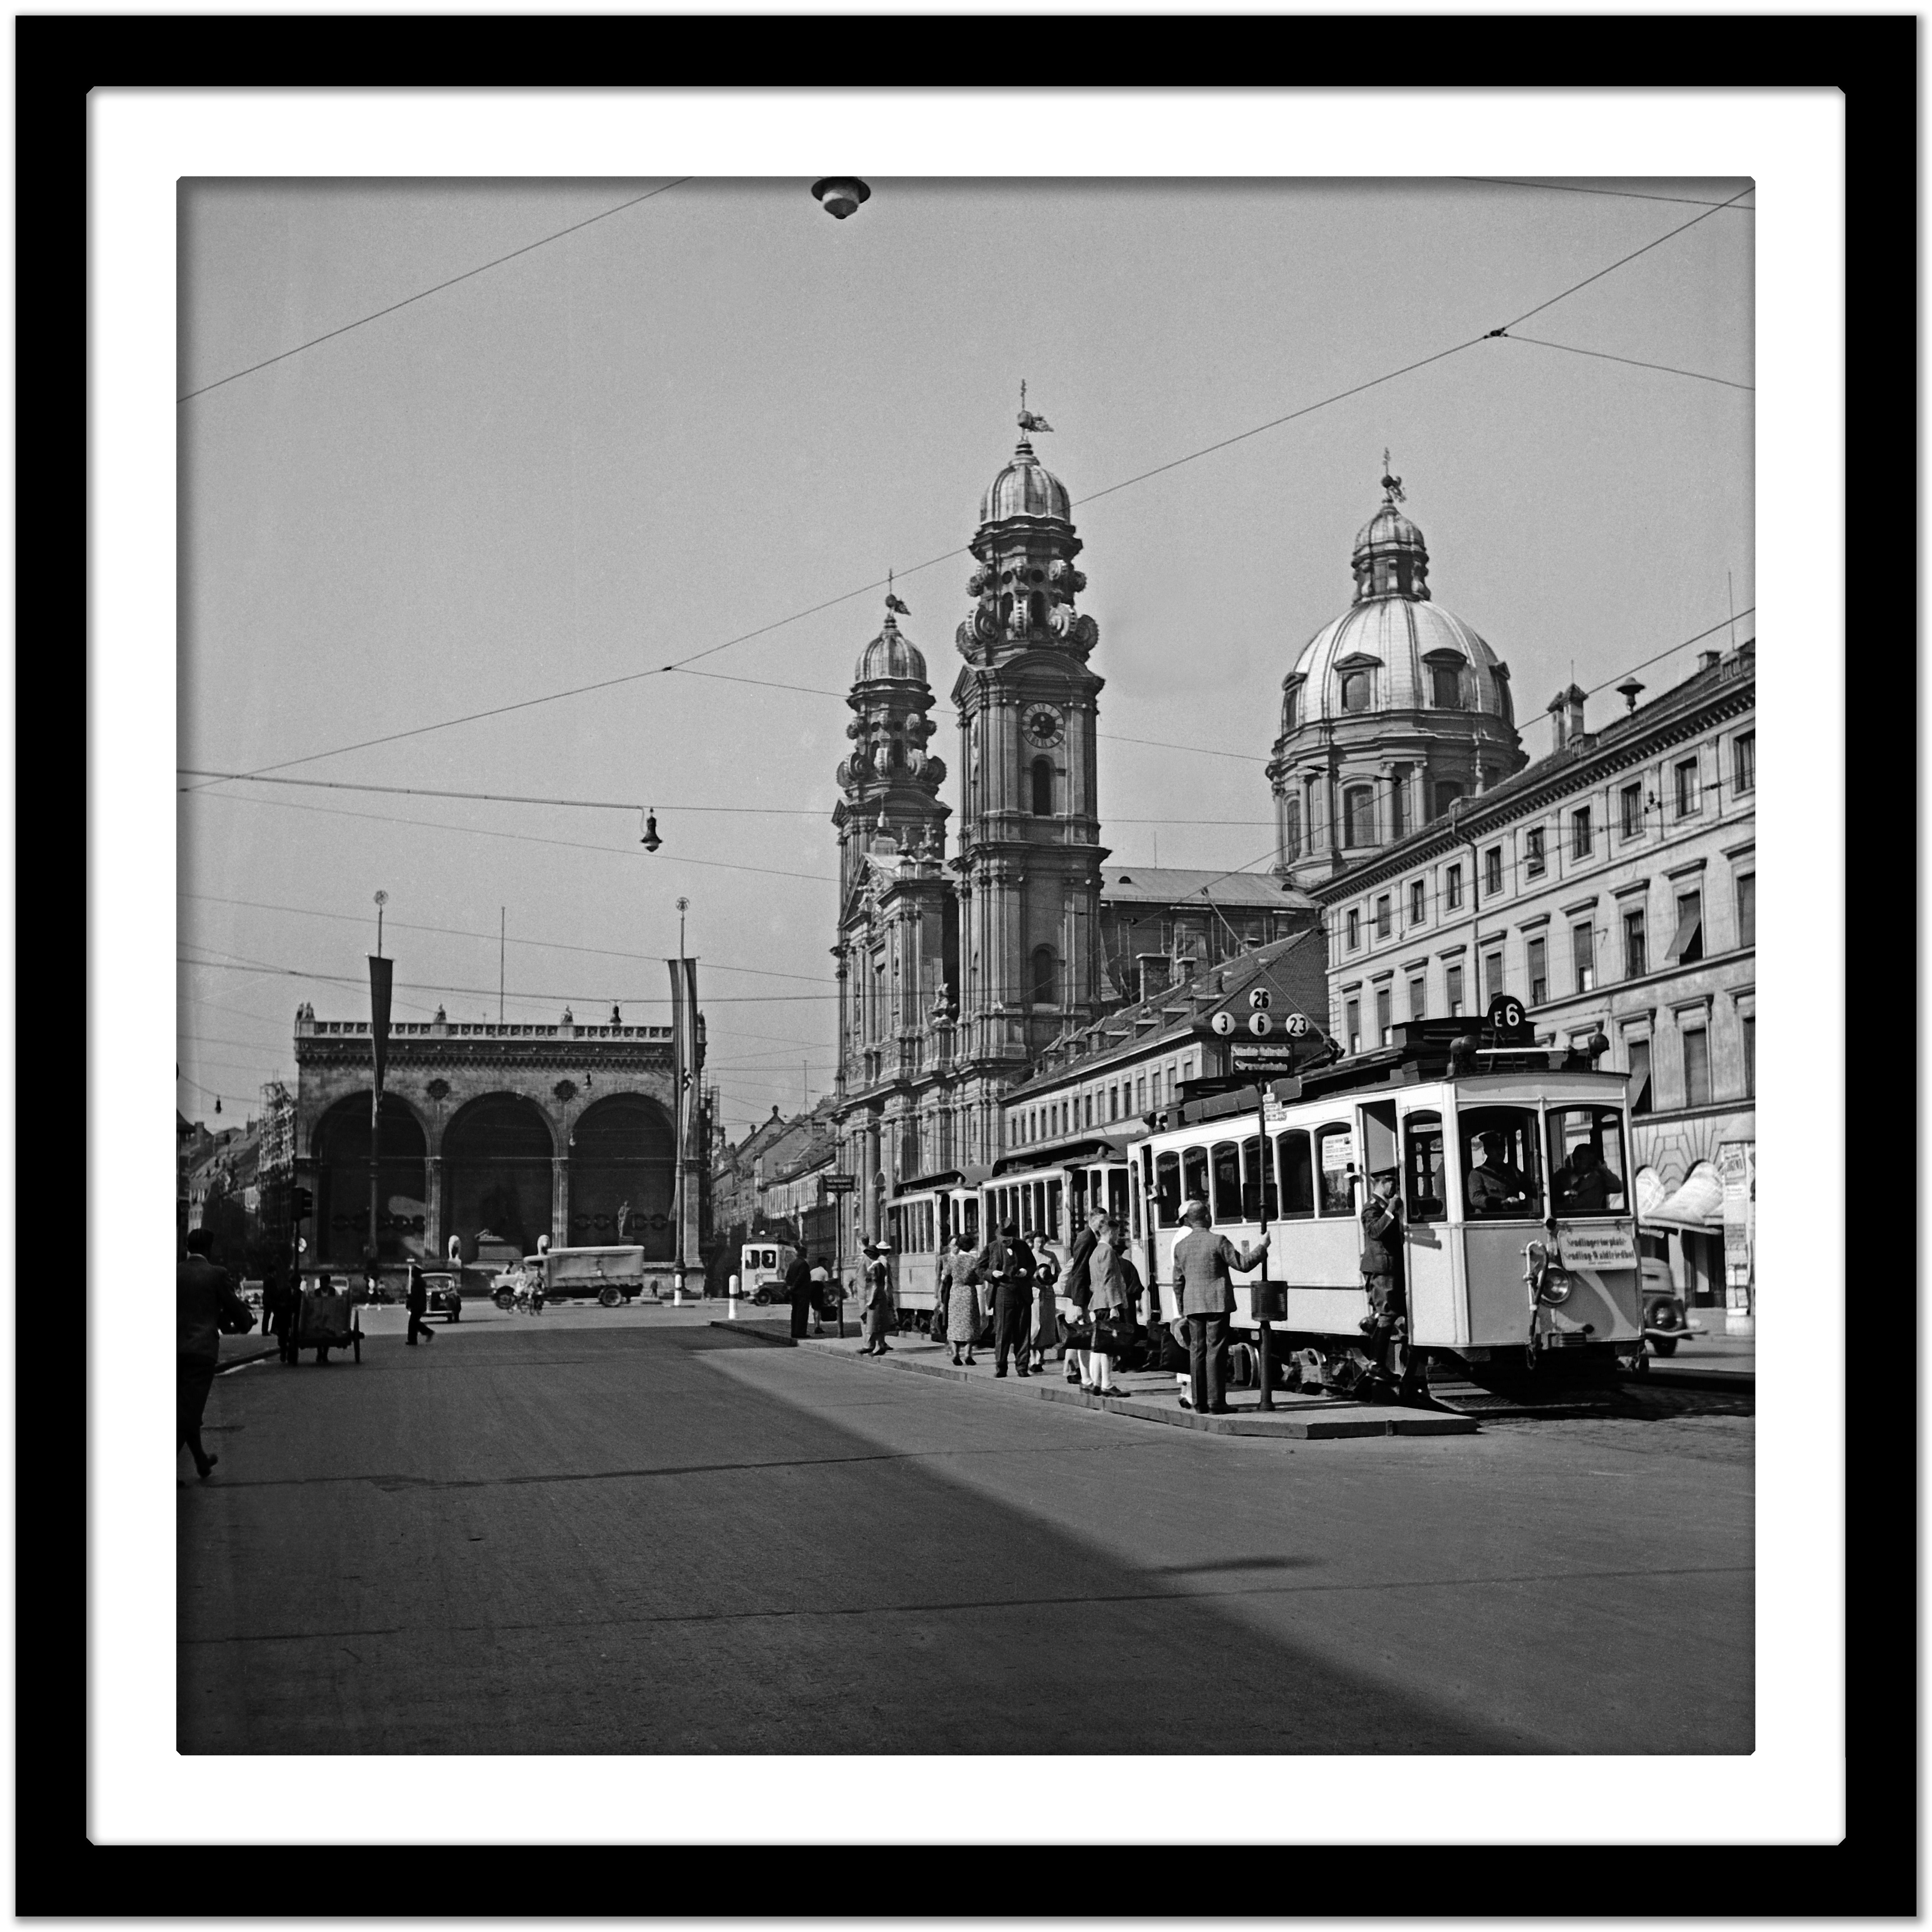 Odeonsplatz, Feldherrnhalle, Theatinerkirche, Munich Allemagne 1937, Imprimé ultérieurement - Gris Black and White Photograph par Karl Heinrich Lämmel